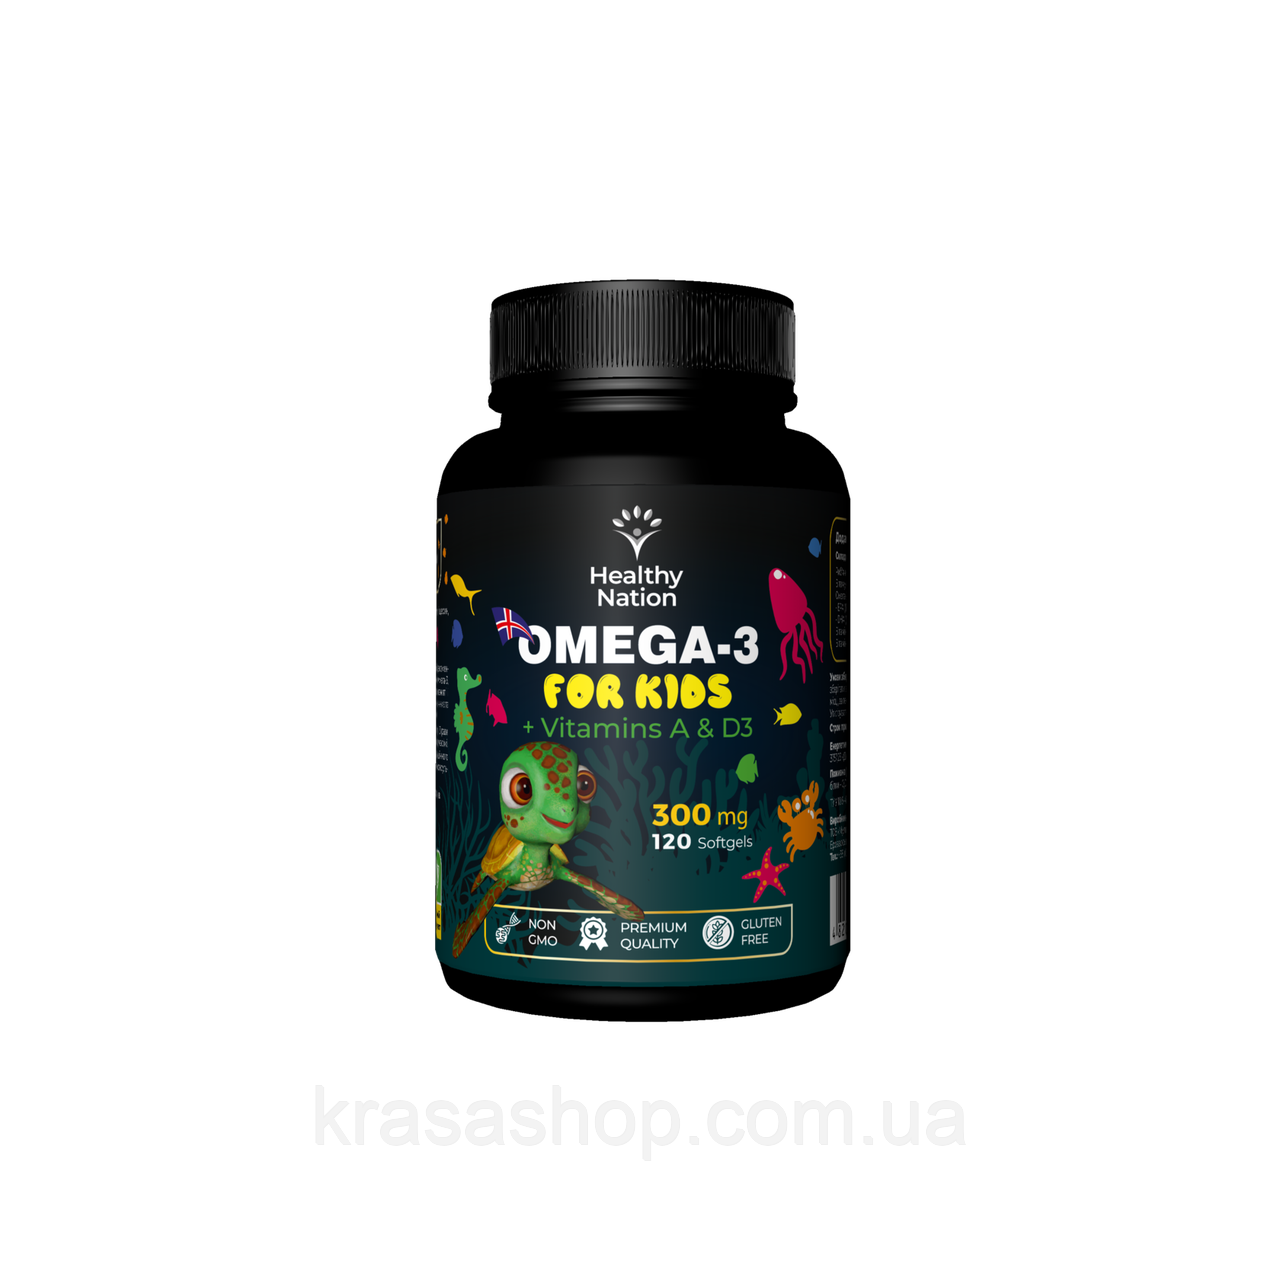 Healthy Nation - Омега-3 для дітей / Omega-3 for Kids + Vitamins A & D3 300 mg / 120 Softgels (120 капс)